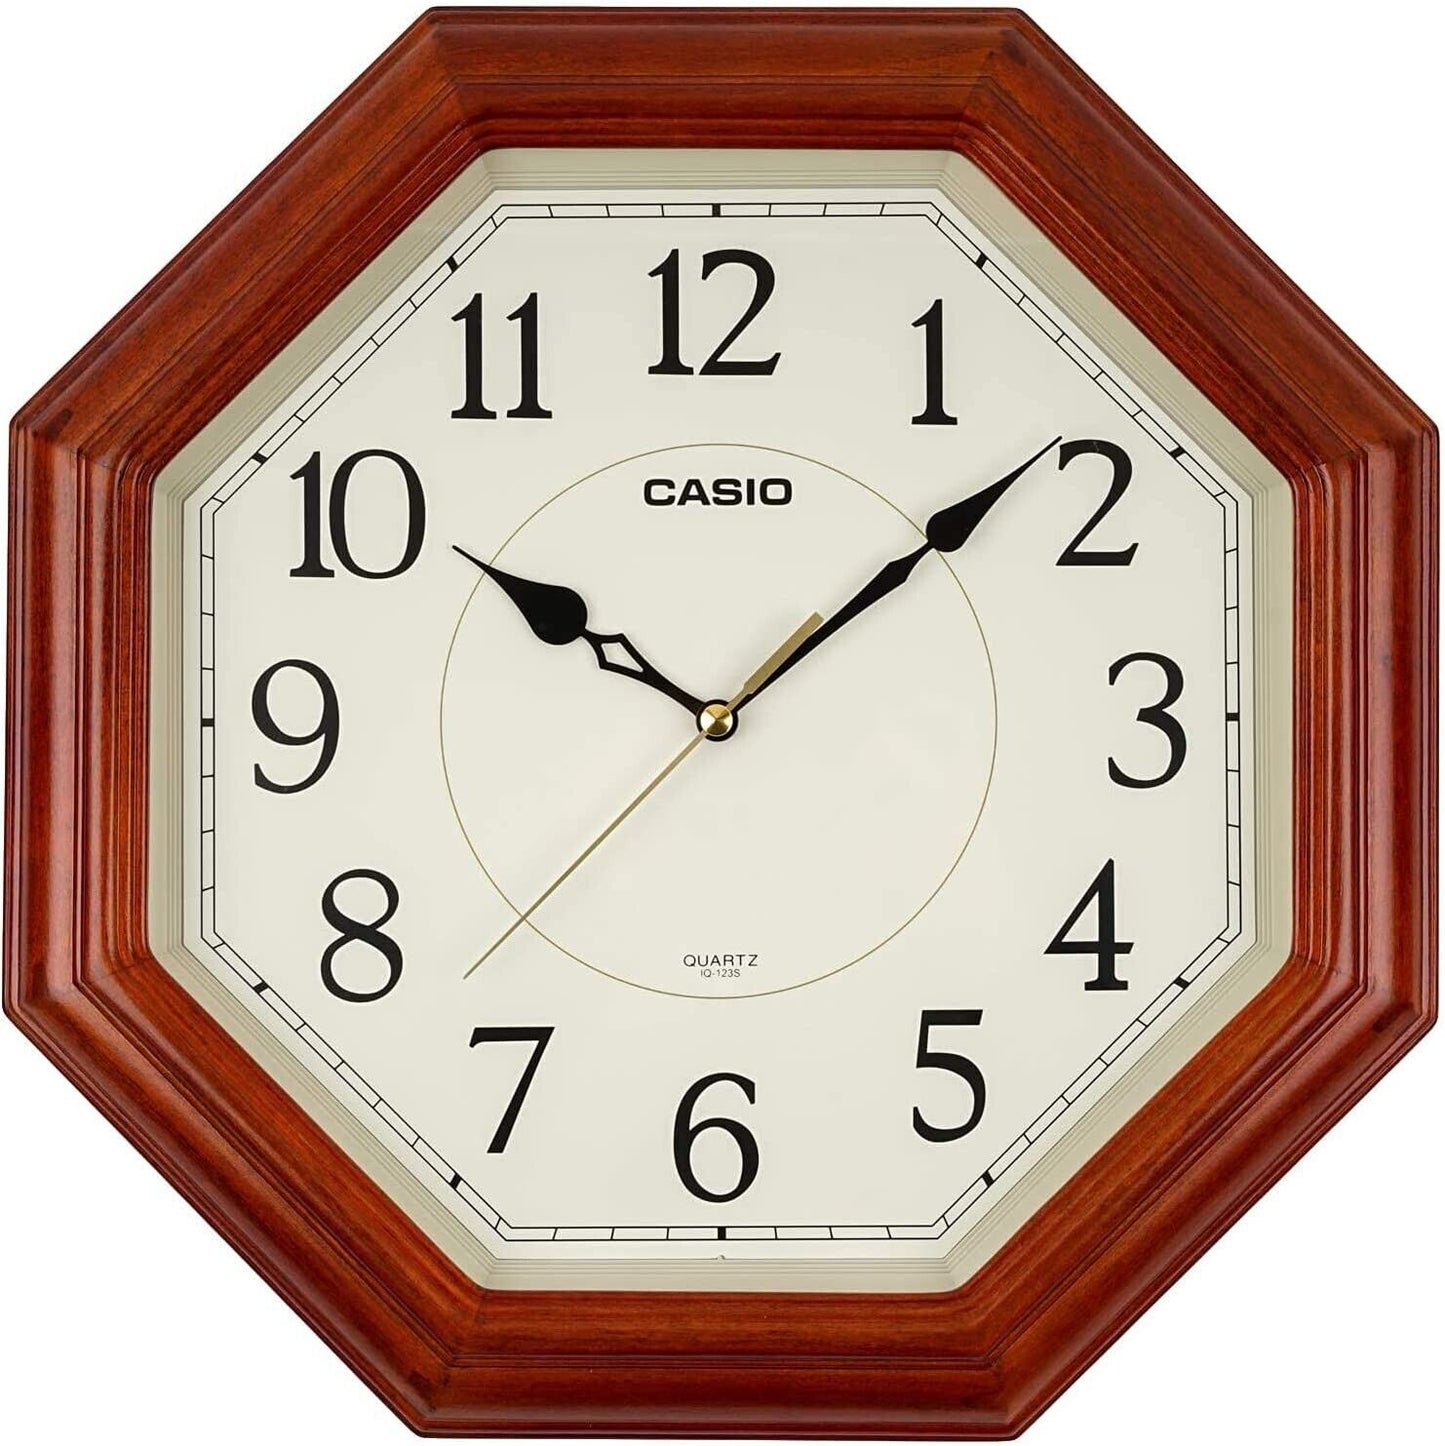 IQ-123S-5JF CASIO Casio wall clock Quartz clock wooden frame square